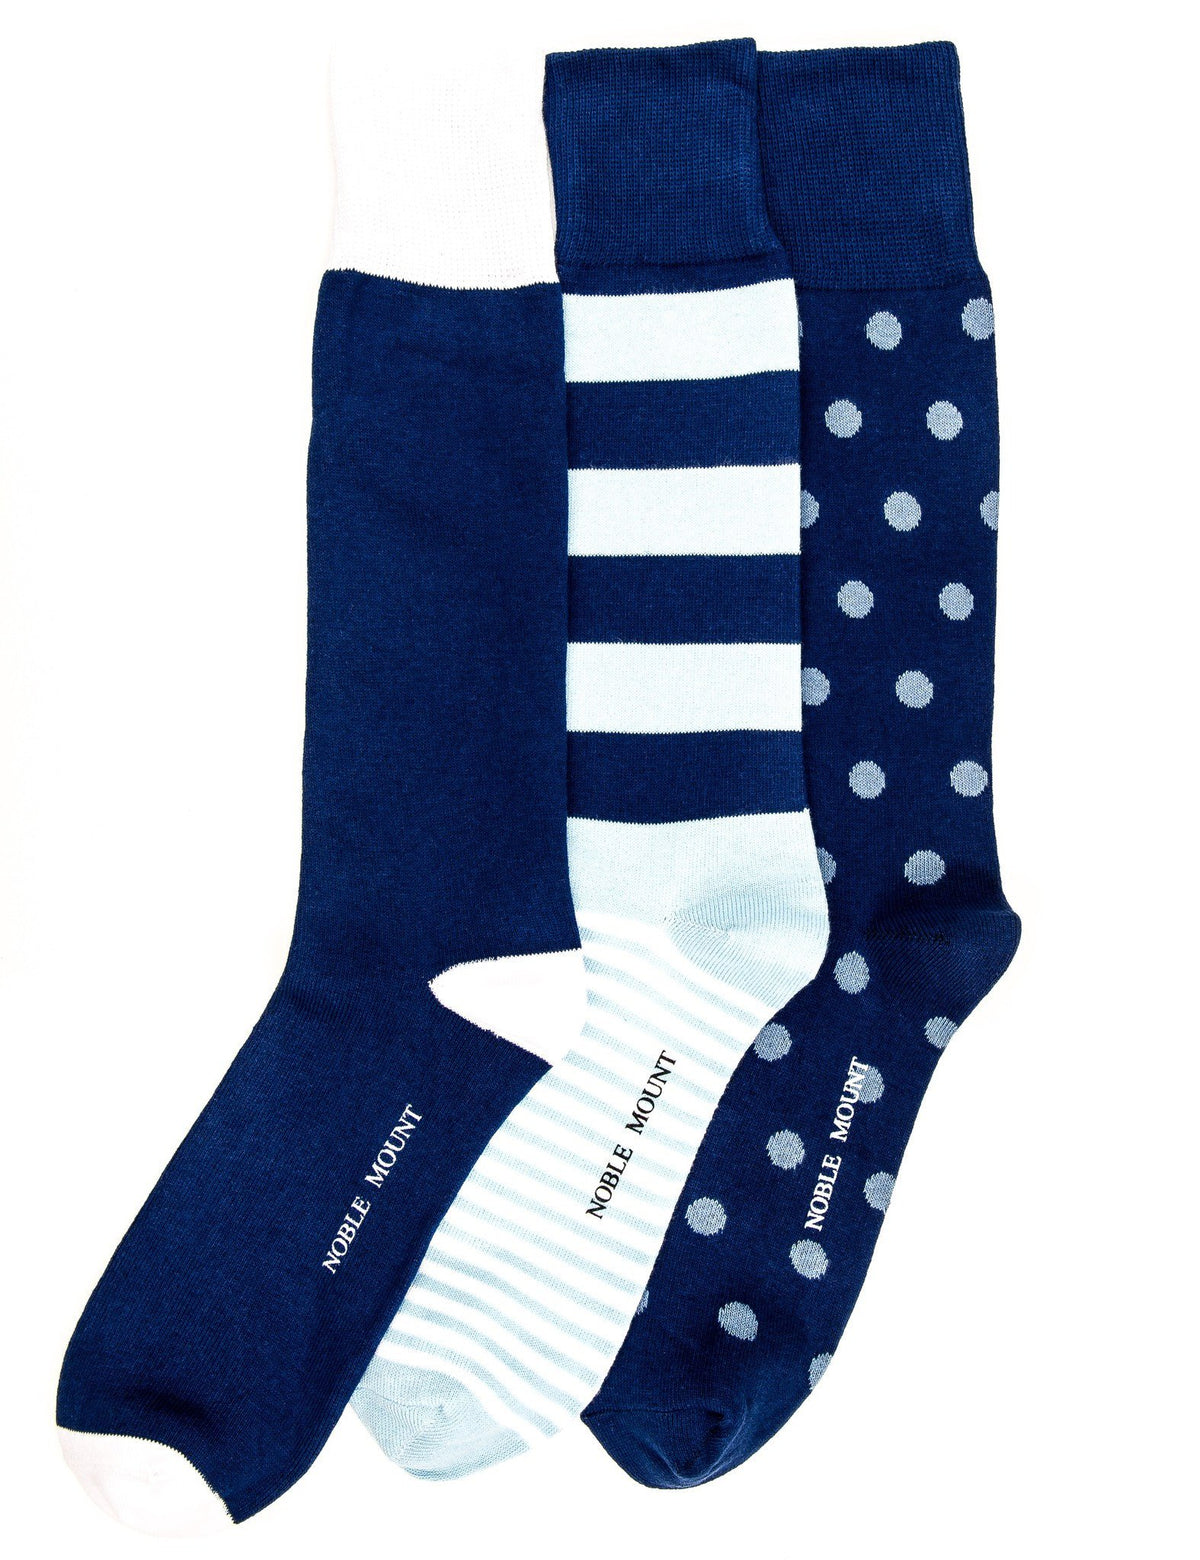 Men's Combed Cotton Dress Socks 3-Pack - Set 6